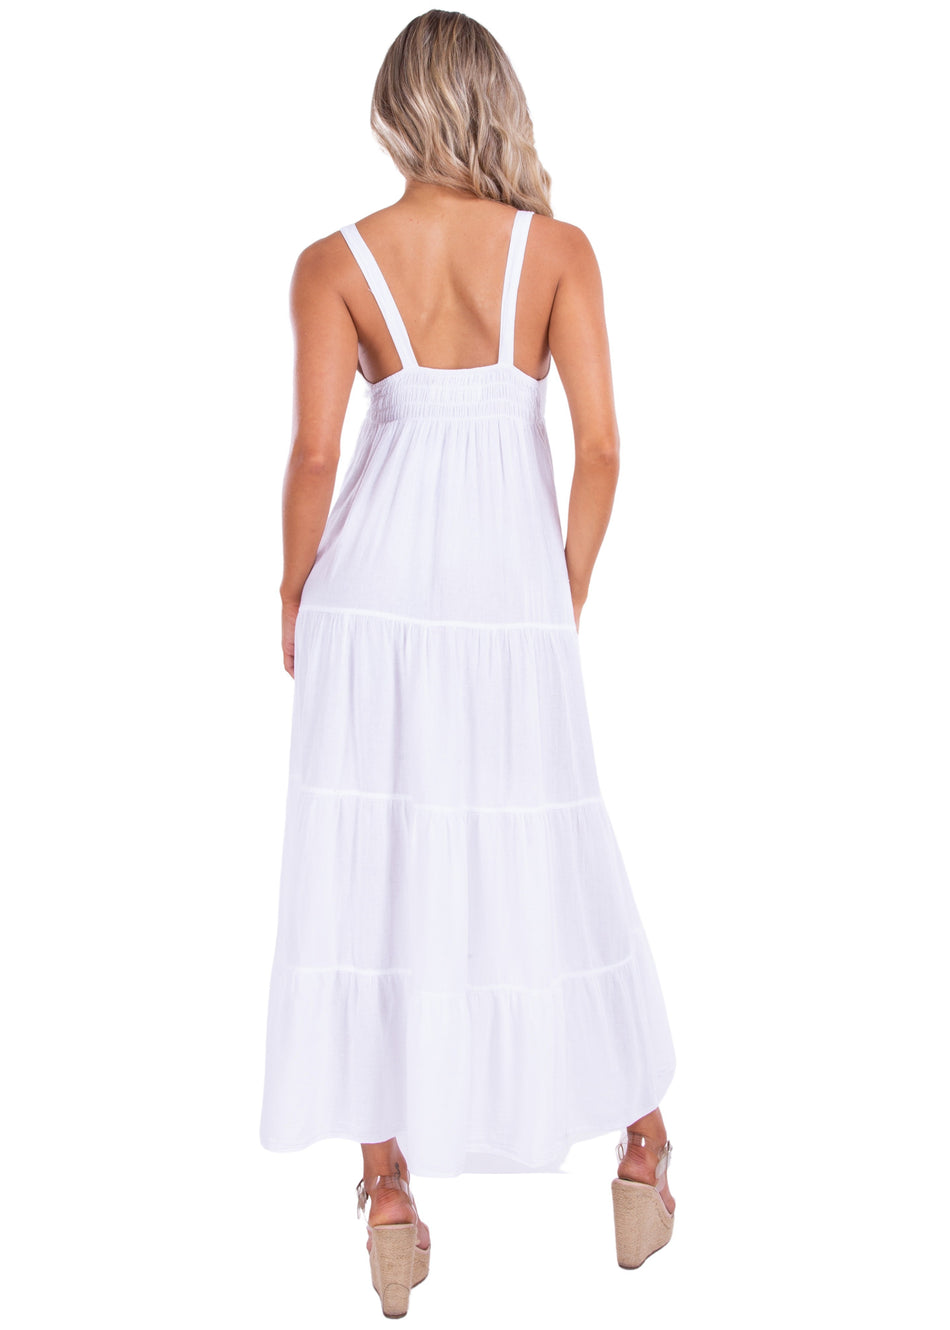 NW1430 - White Cotton Dress